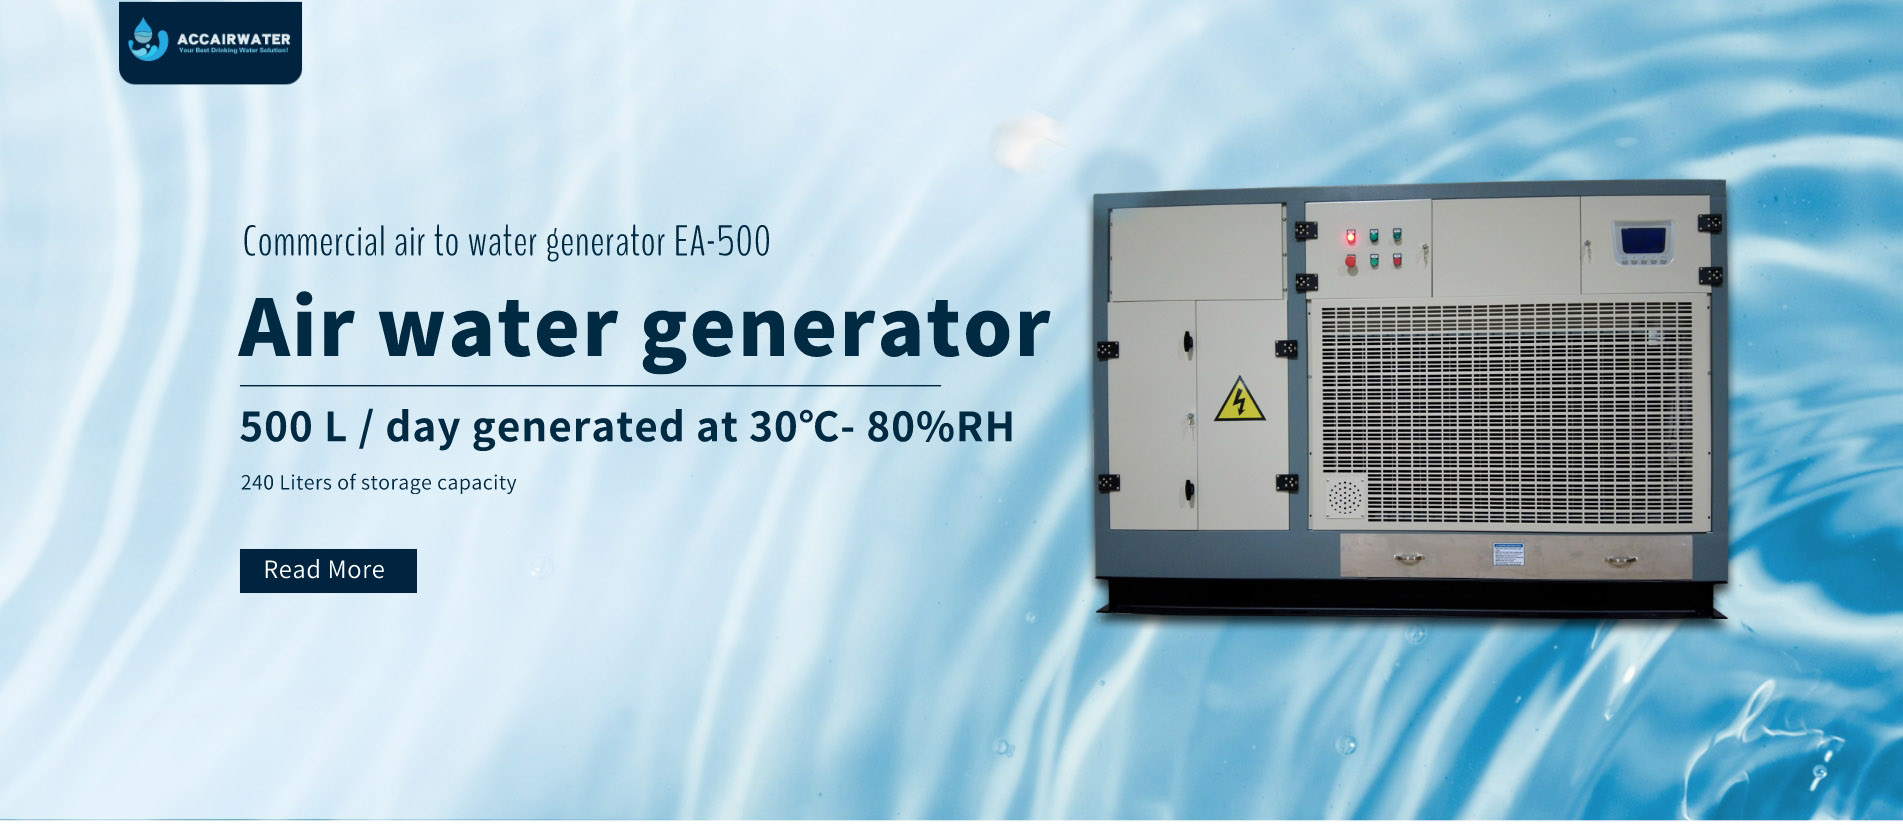 Industrial atmospheric water generator EA-500